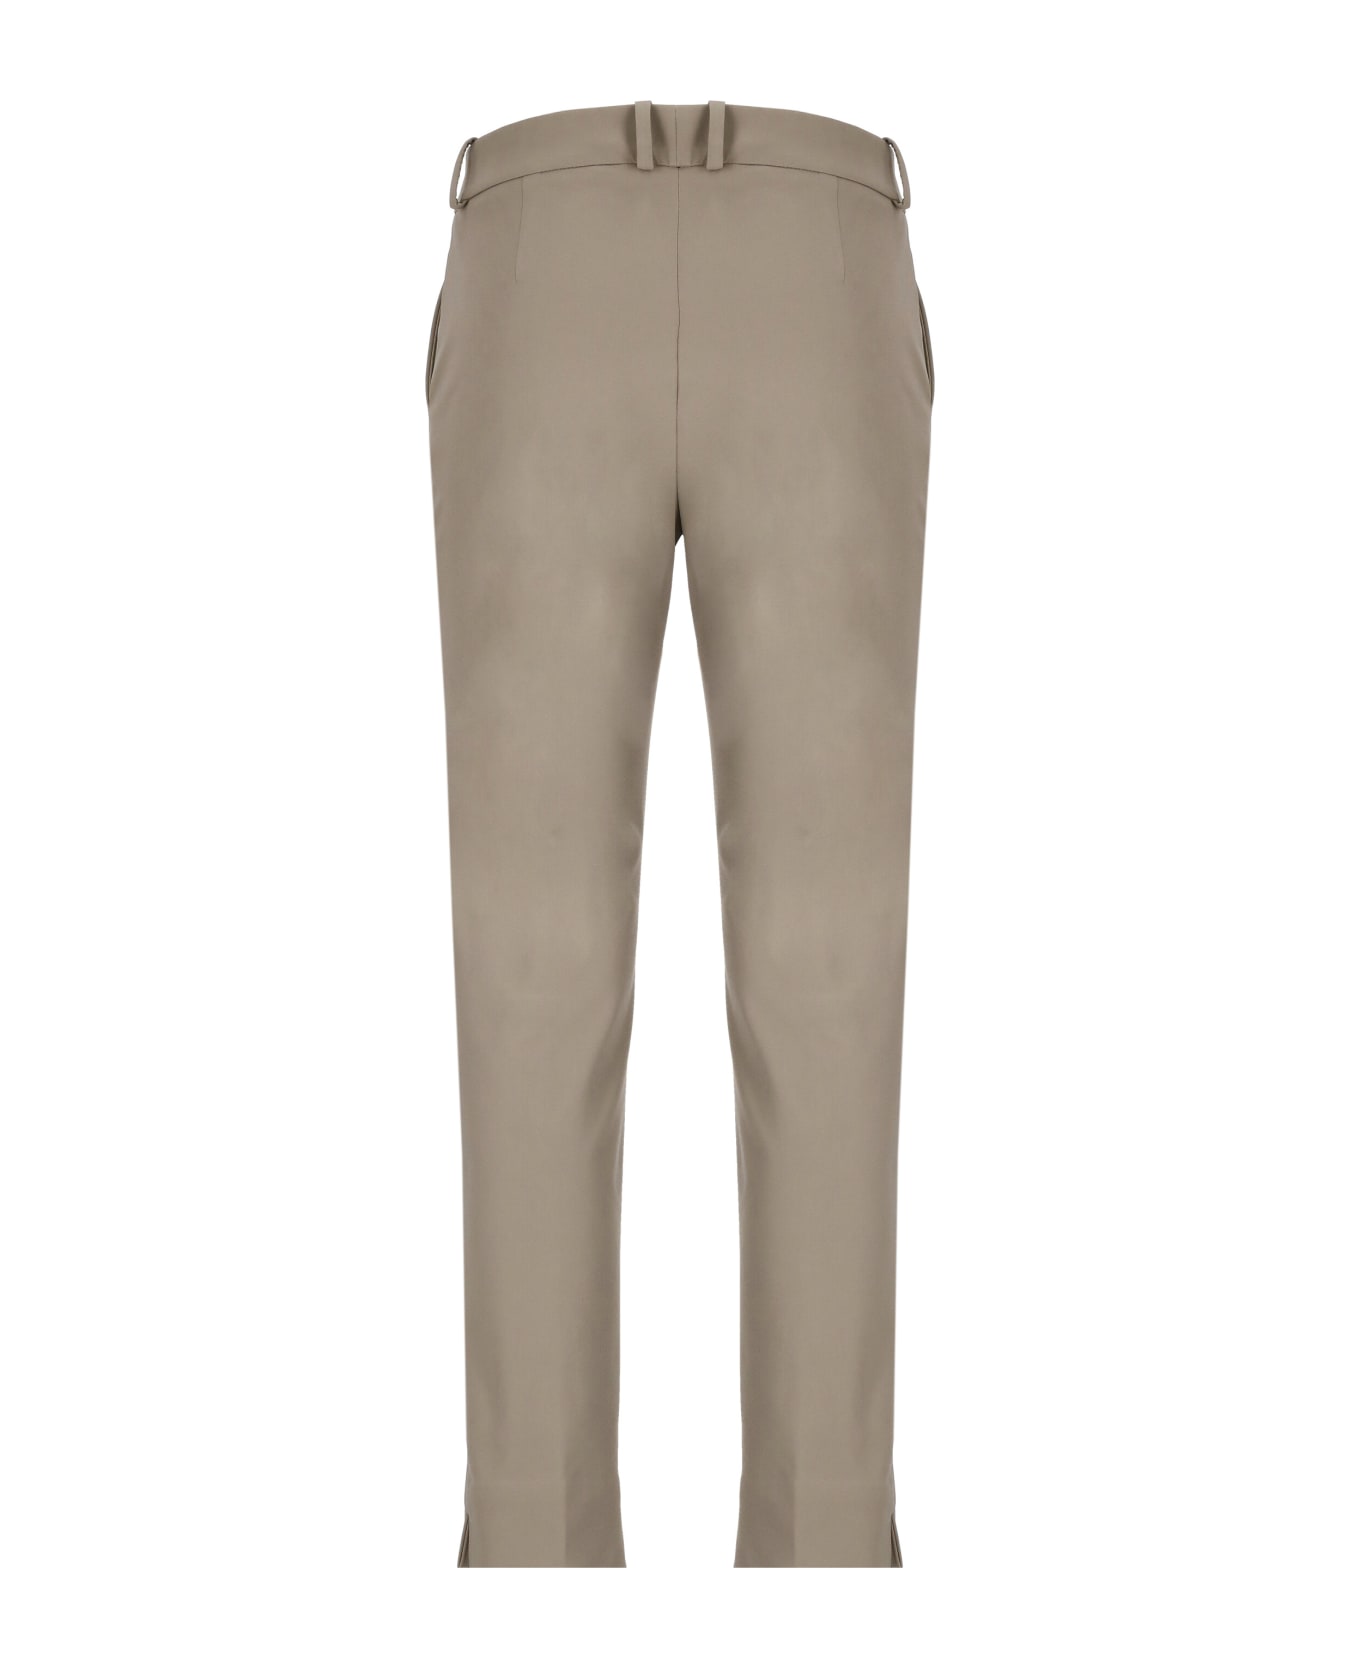 RRD - Roberto Ricci Design Chino Trousers - Grey